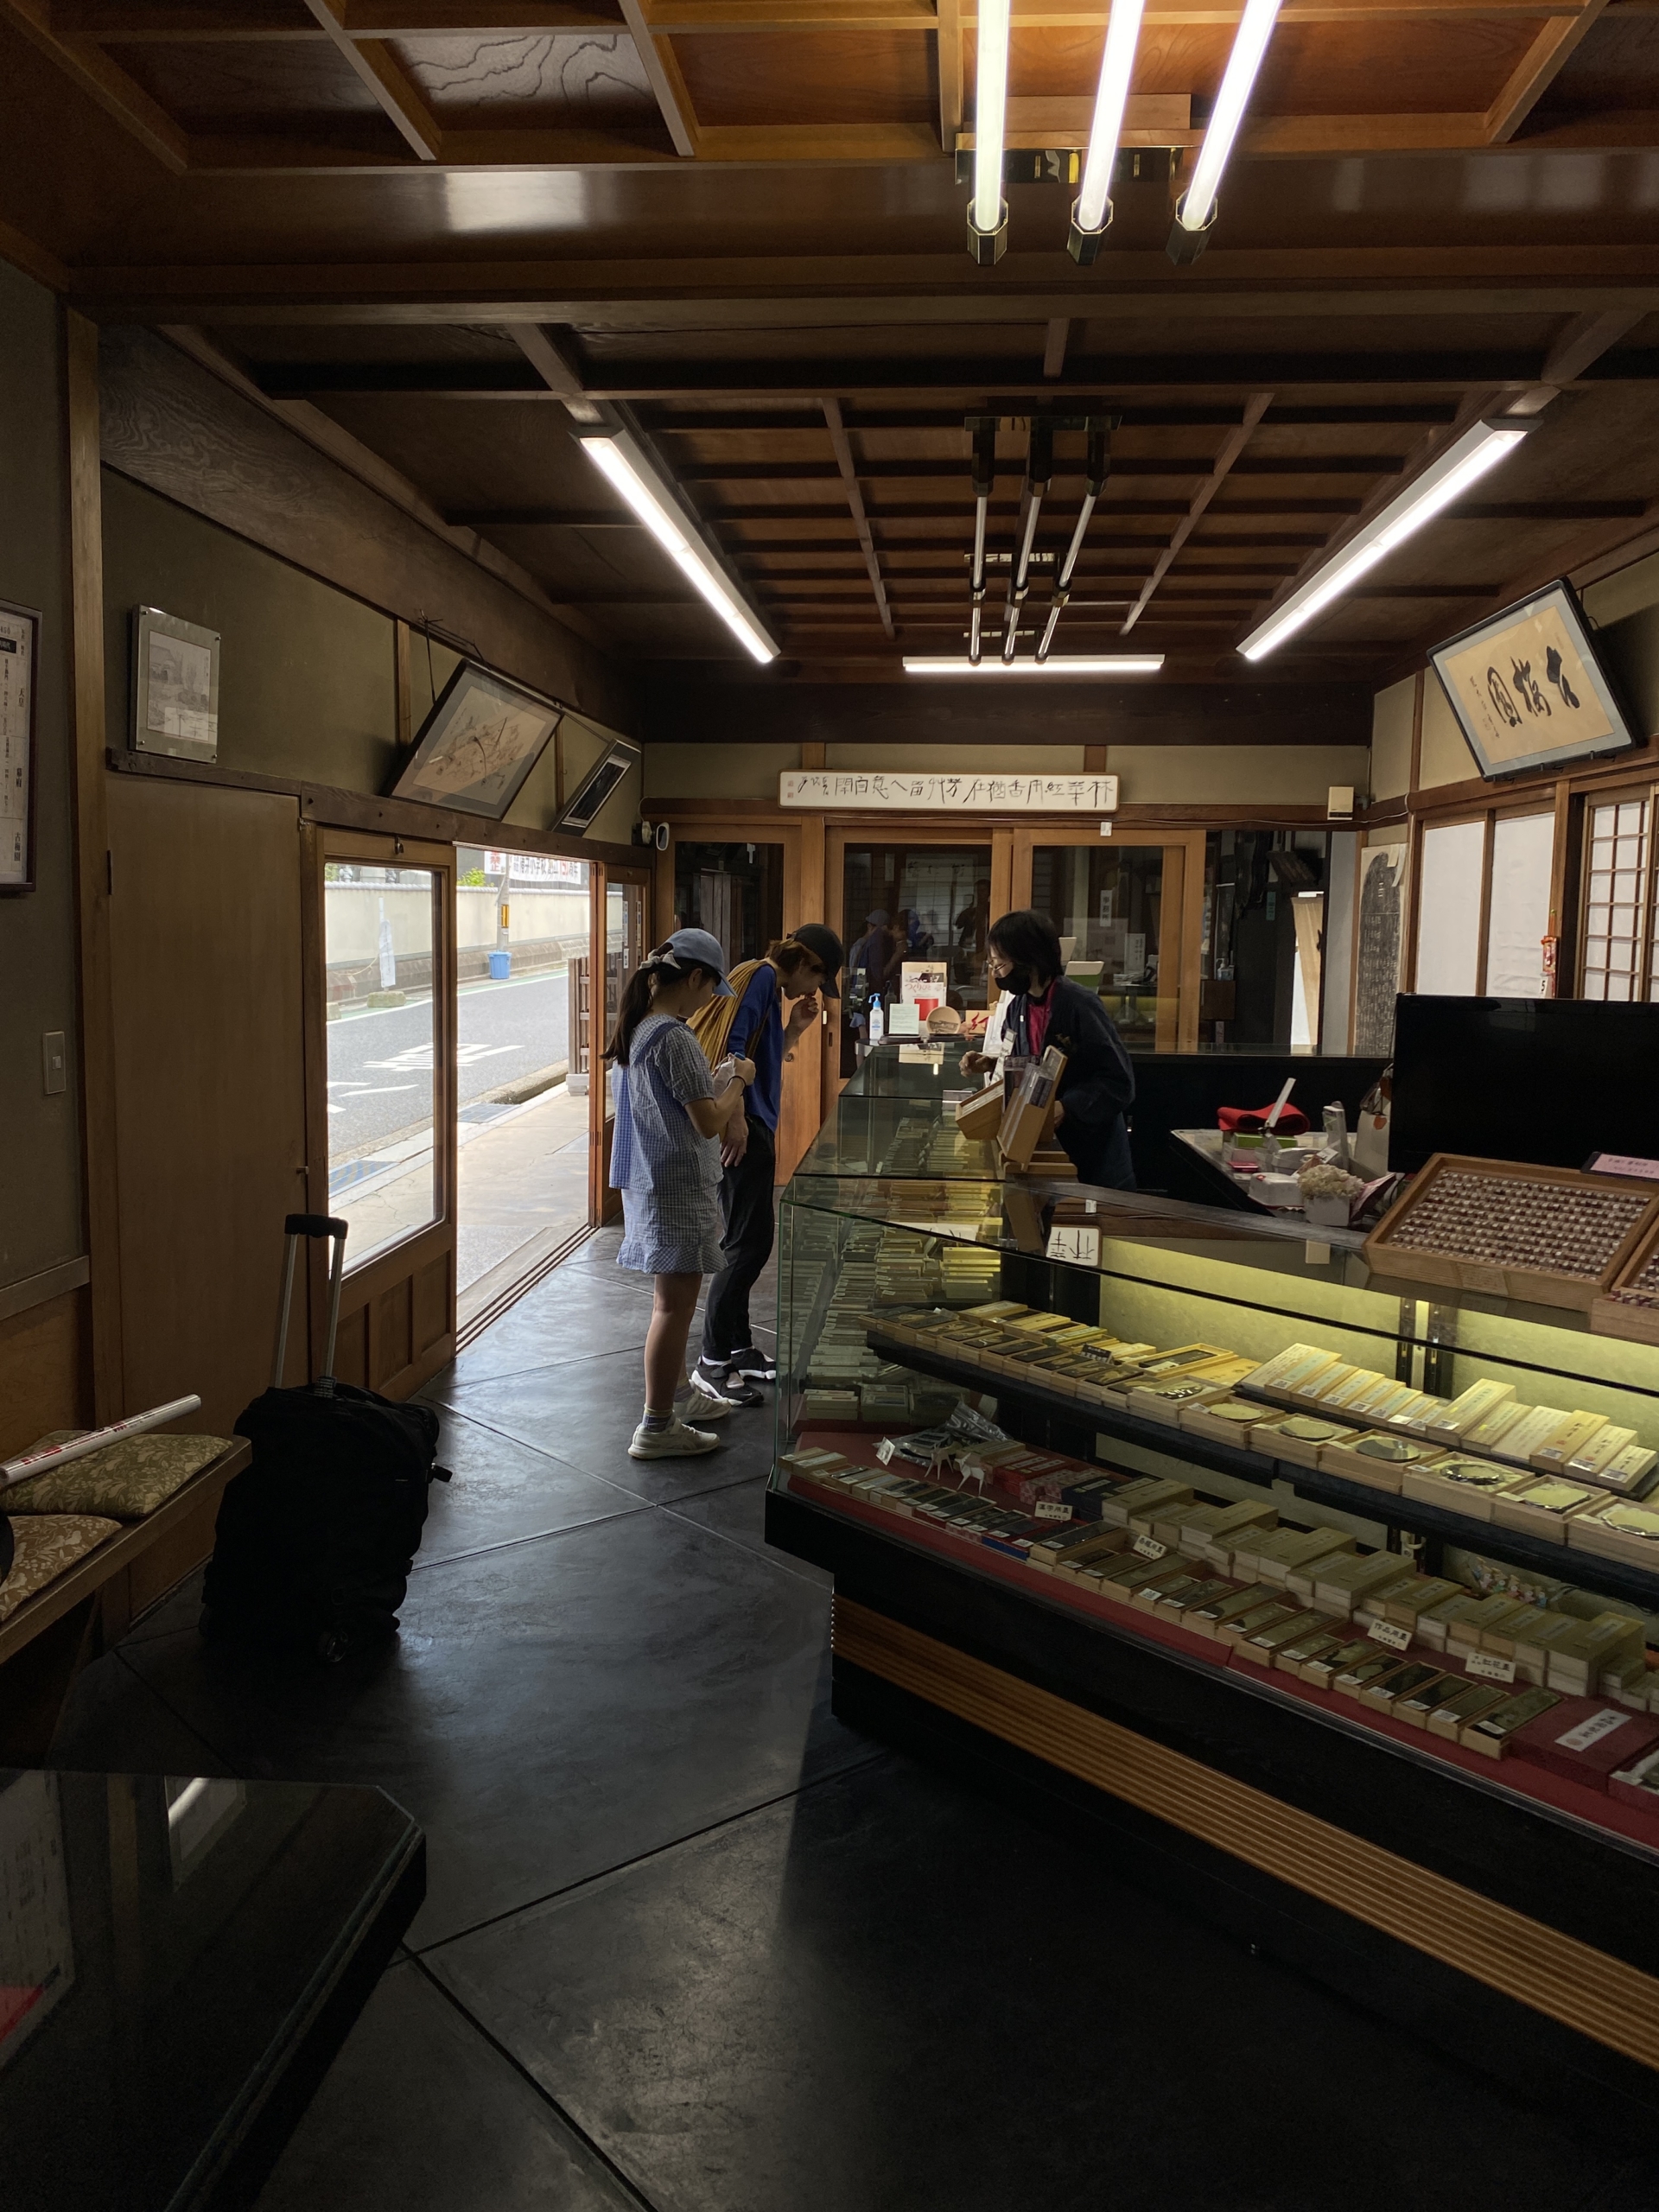 Khách hàng tại cửa hàng Kobaien. Một số thỏi mực 5 sao bán chạy nhất của hãng là Koukaboku, Shitsuboku, Baikaboku, và Shouenboku, từ lâu đã được “nhiều người đánh giá cao.” (Ảnh: Đăng dưới sự cho phép của Tập đoàn ICHI, Nhật Bản)